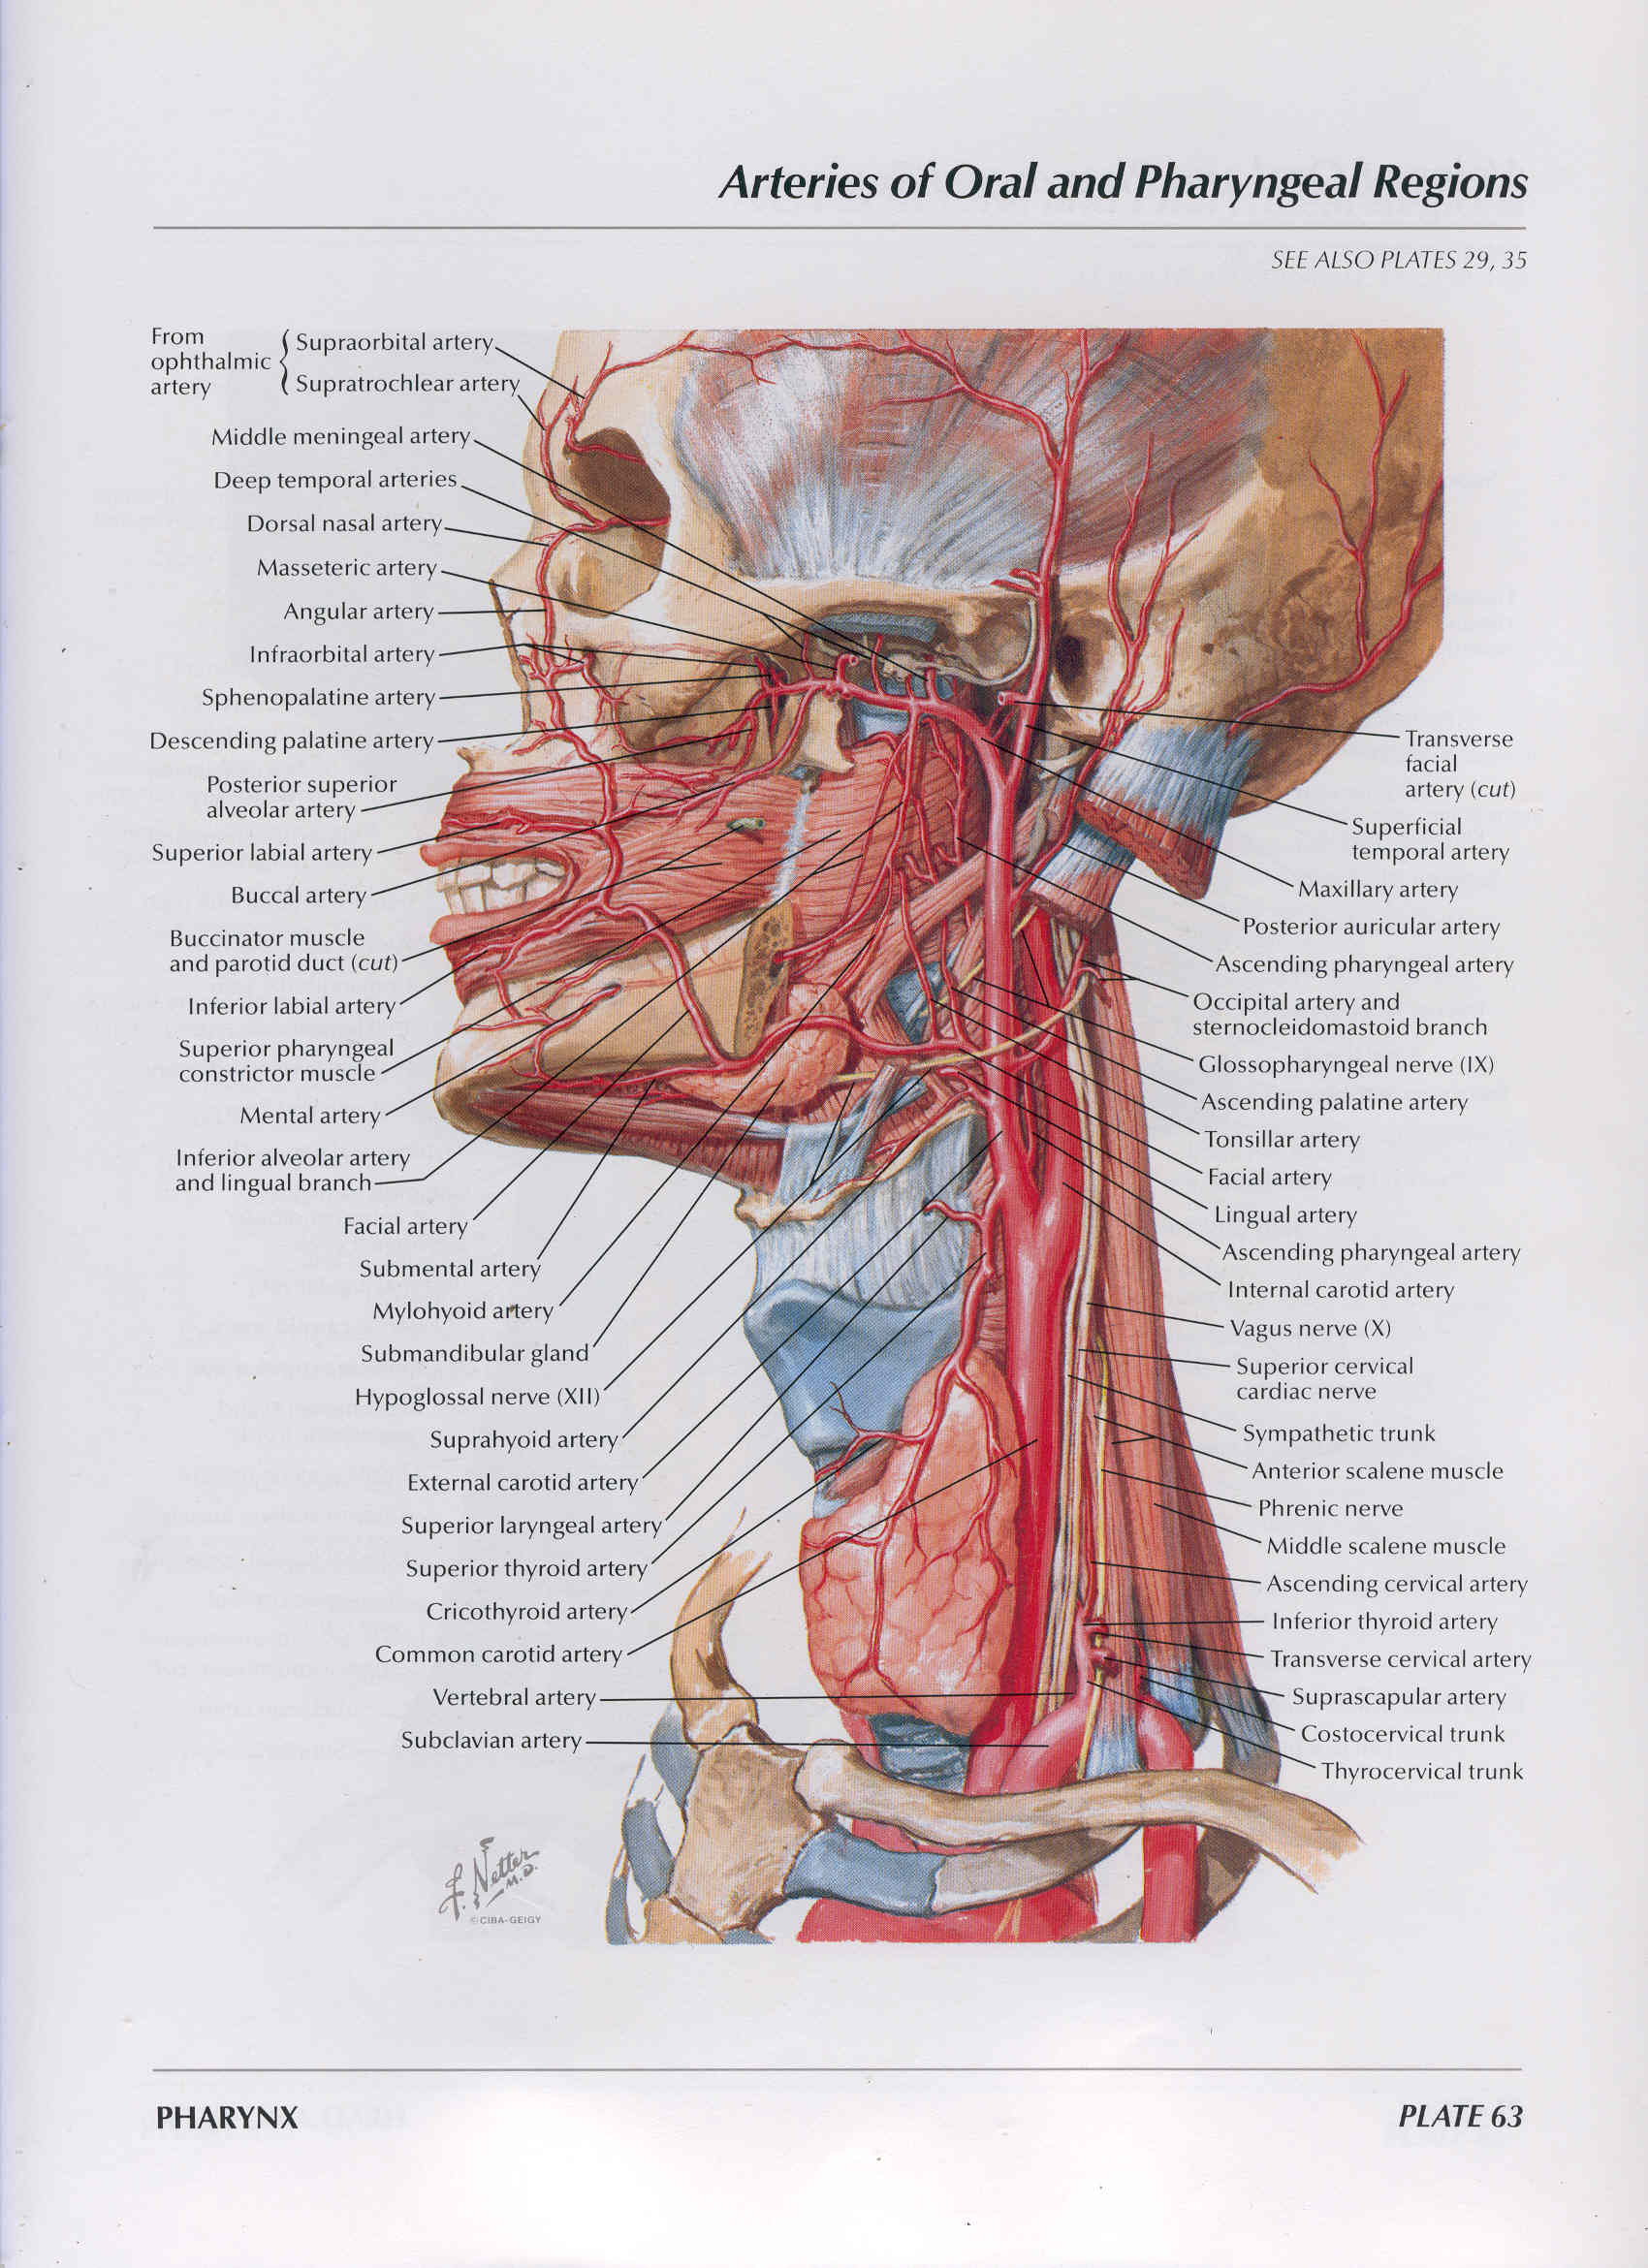 Сонные артерии на шее человека фото